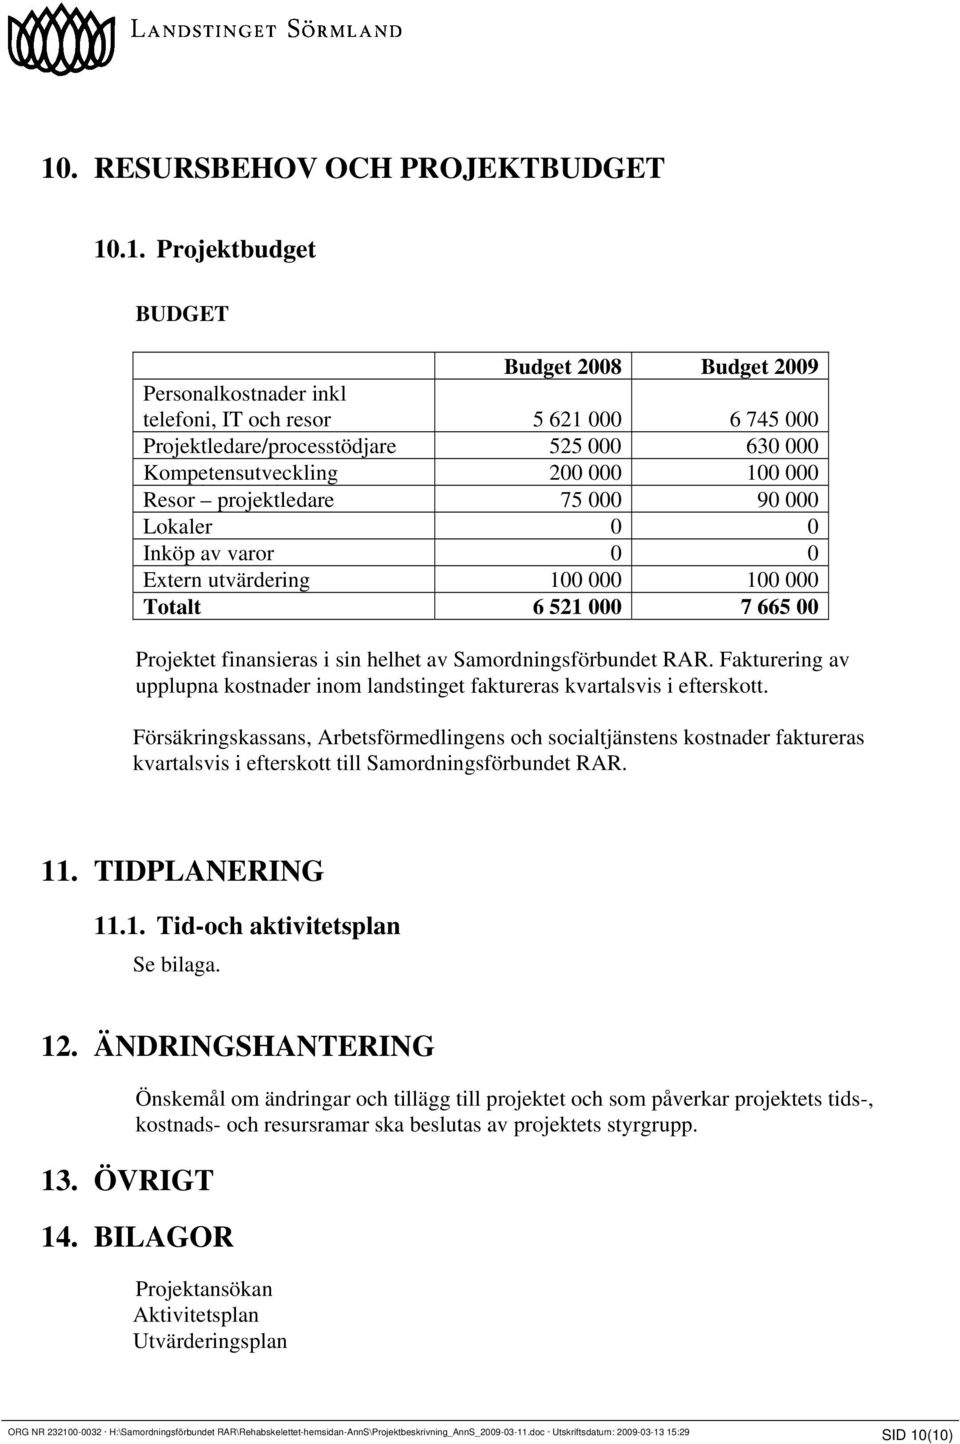 Samordningsförbundet RAR. Fakturering av upplupna kostnader inom landstinget faktureras kvartalsvis i efterskott.